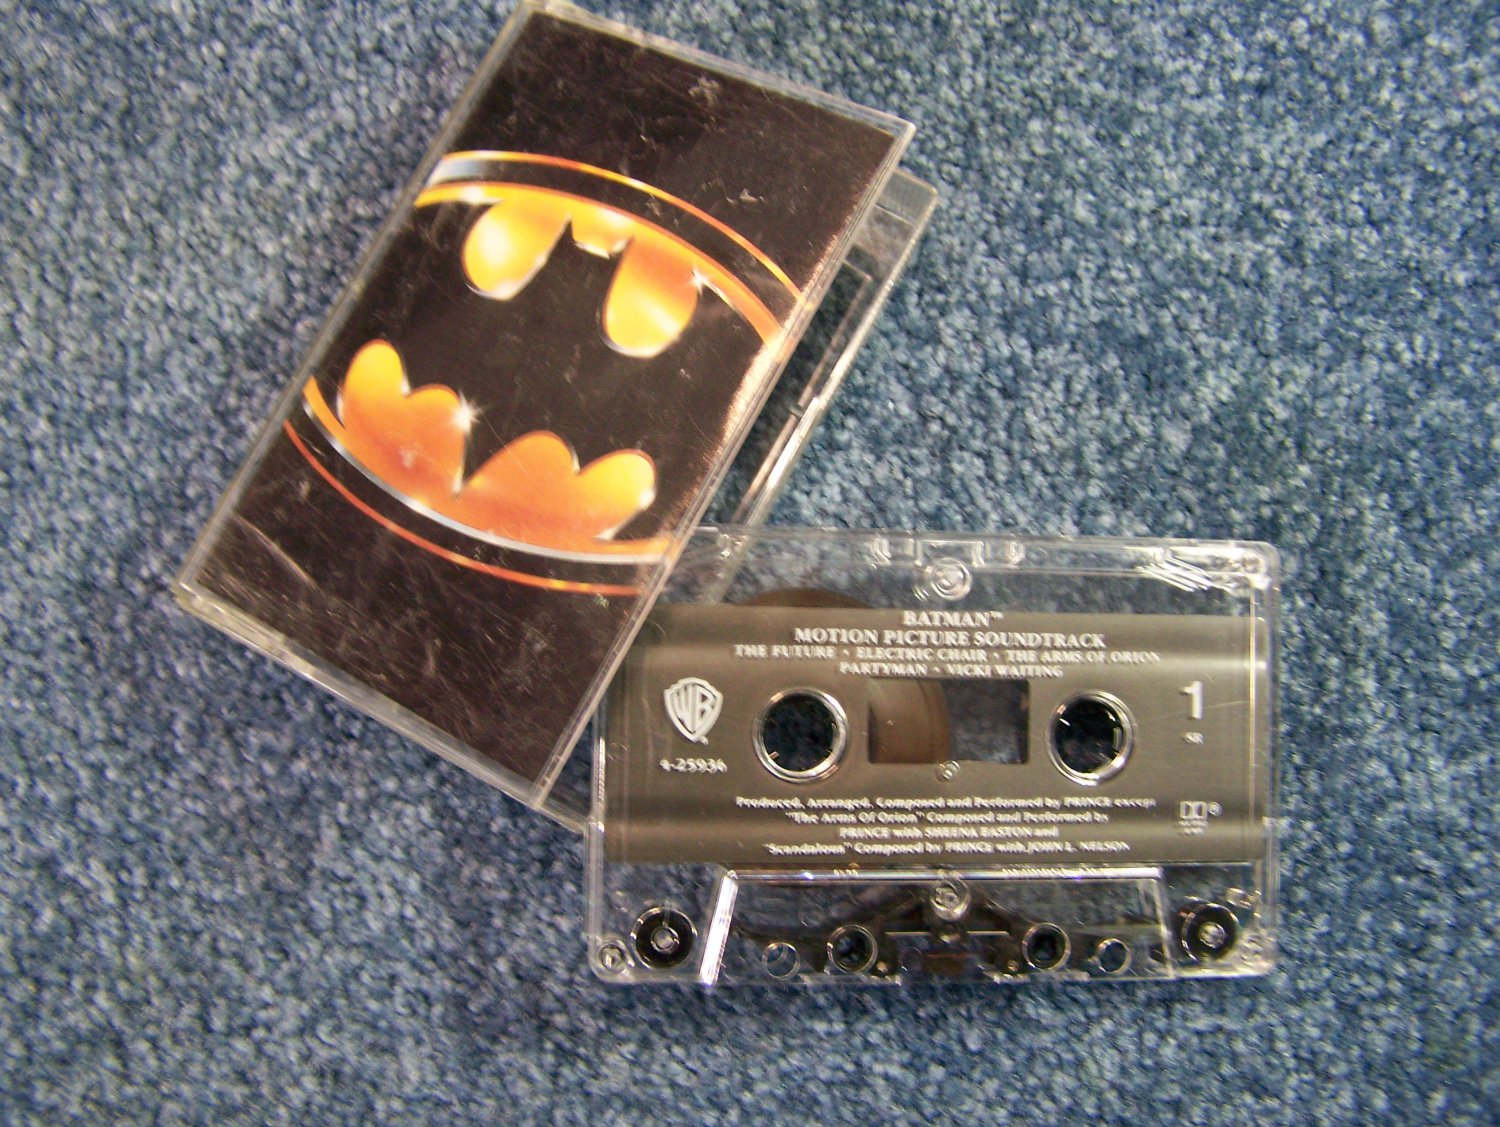 BATMAN Motion Picture Soundtrack cassette tape